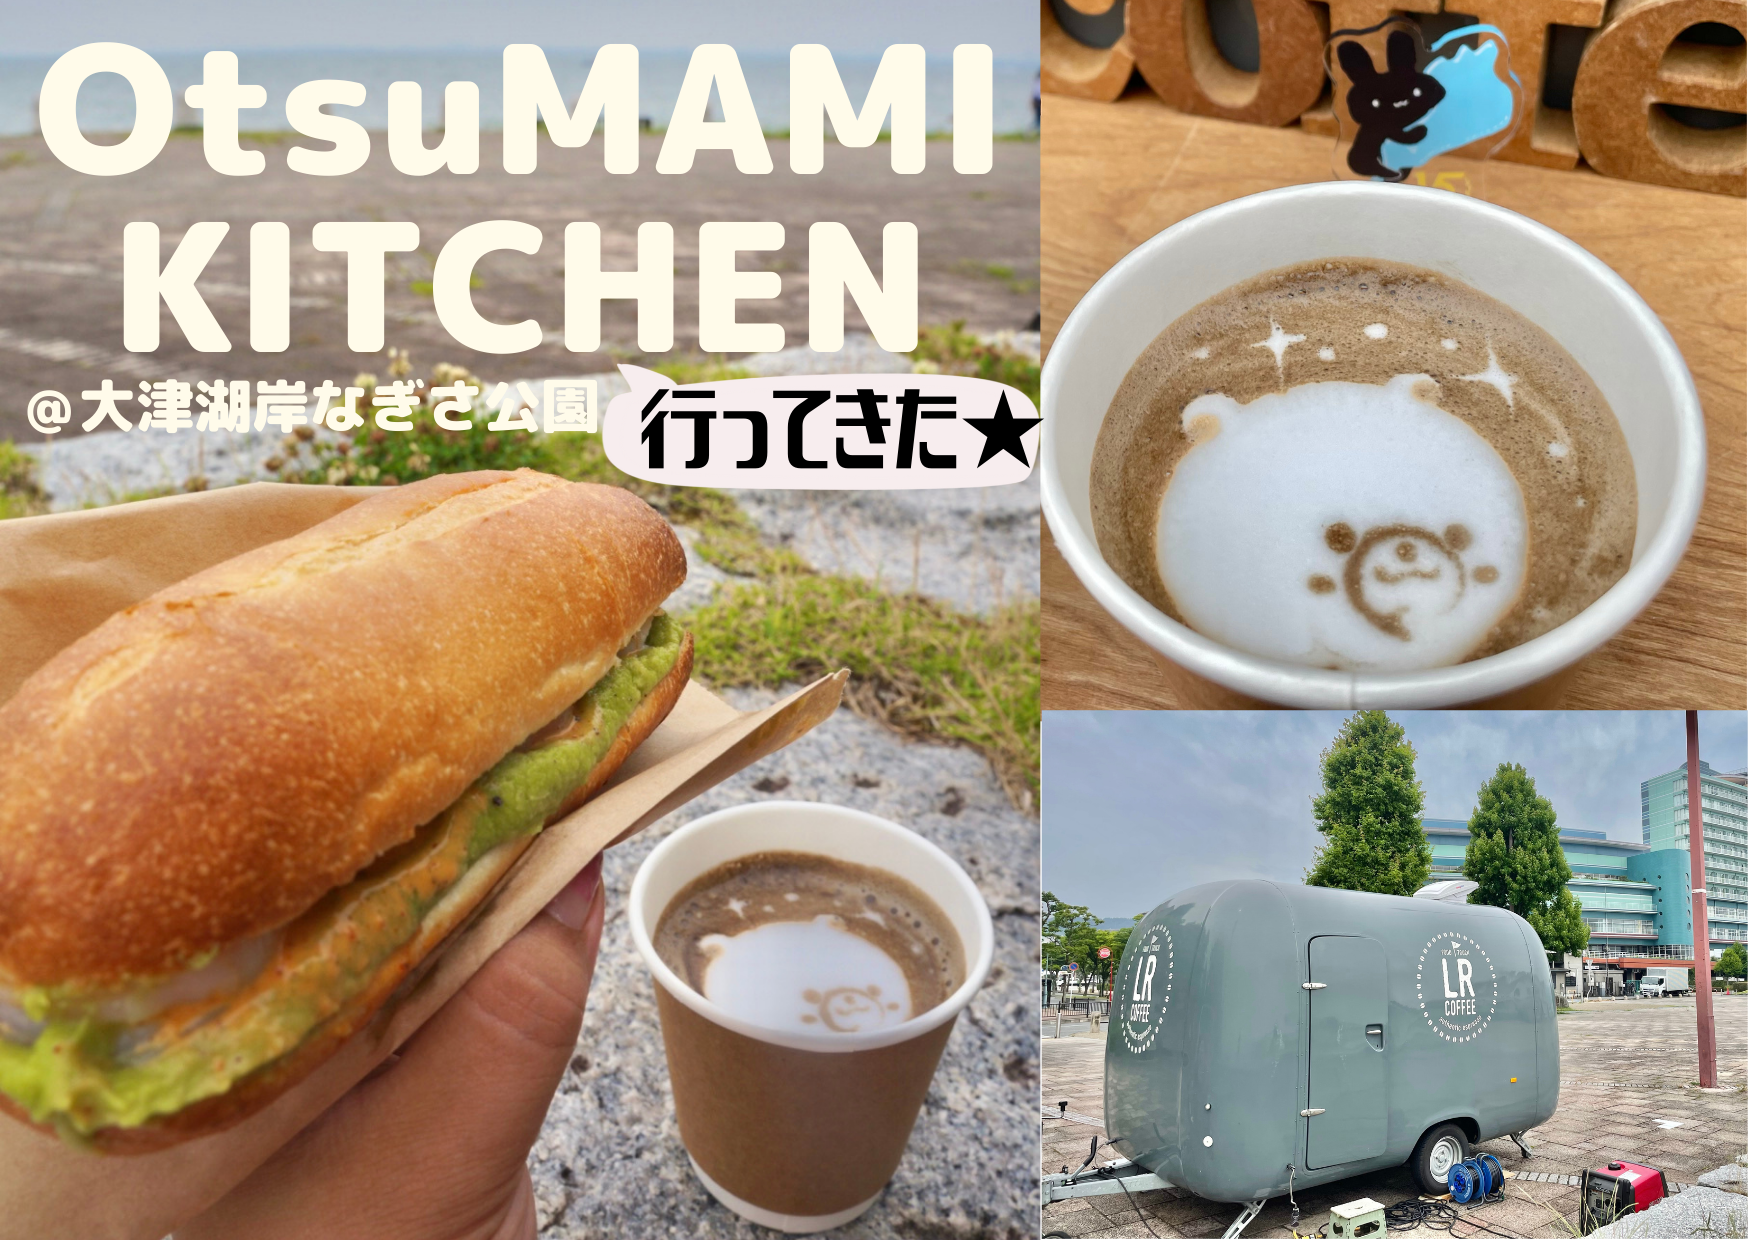 【OtsuMAMI KITCHEN】LR coffeeのキッチンカーグルメを味わってきました♪【大津湖岸なぎさ公園】絶好のロ…